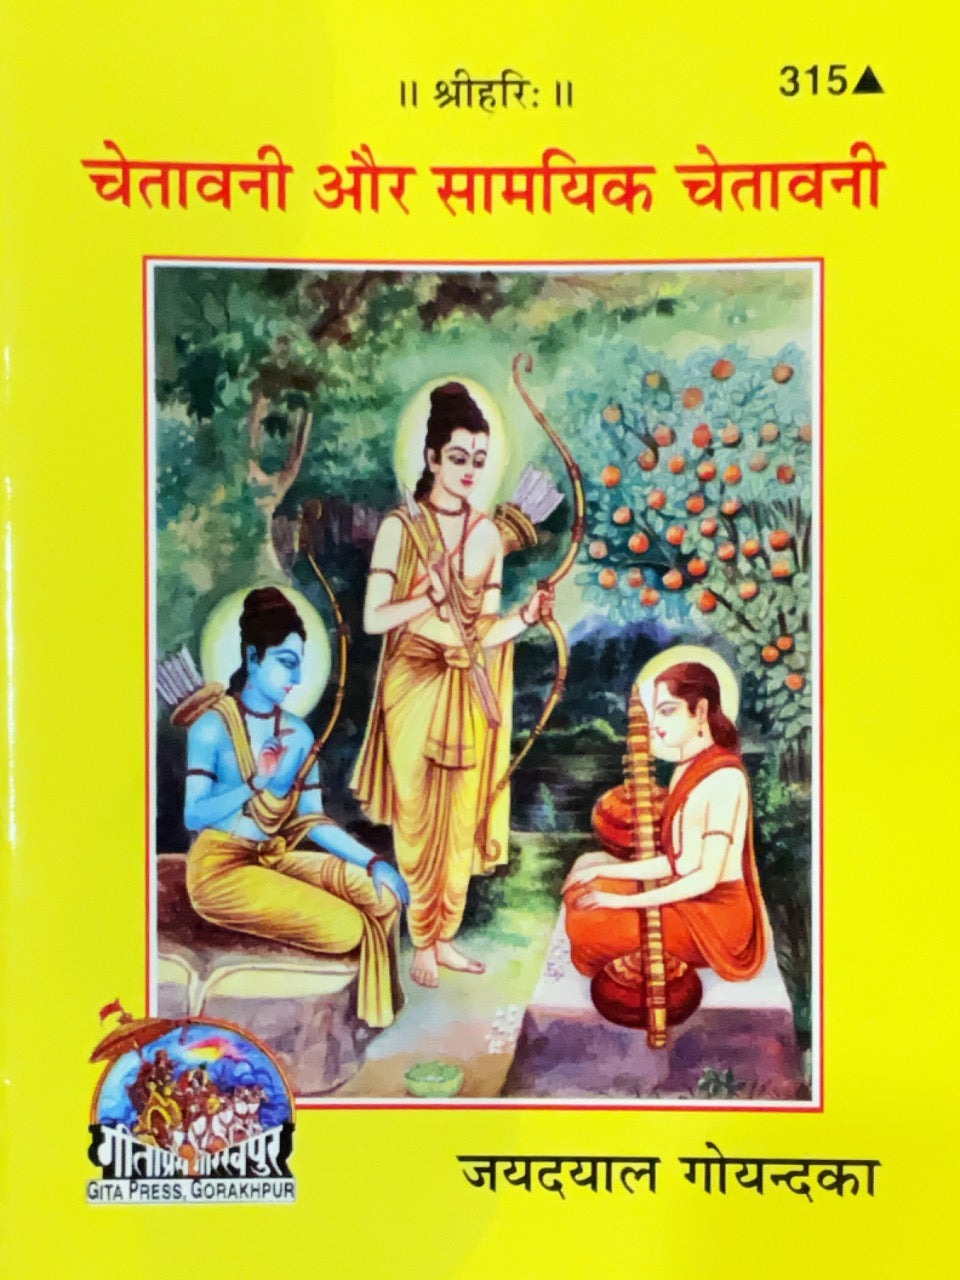 SANATAN  Chetavni Aur Saamayik Chetavni by Gita Press